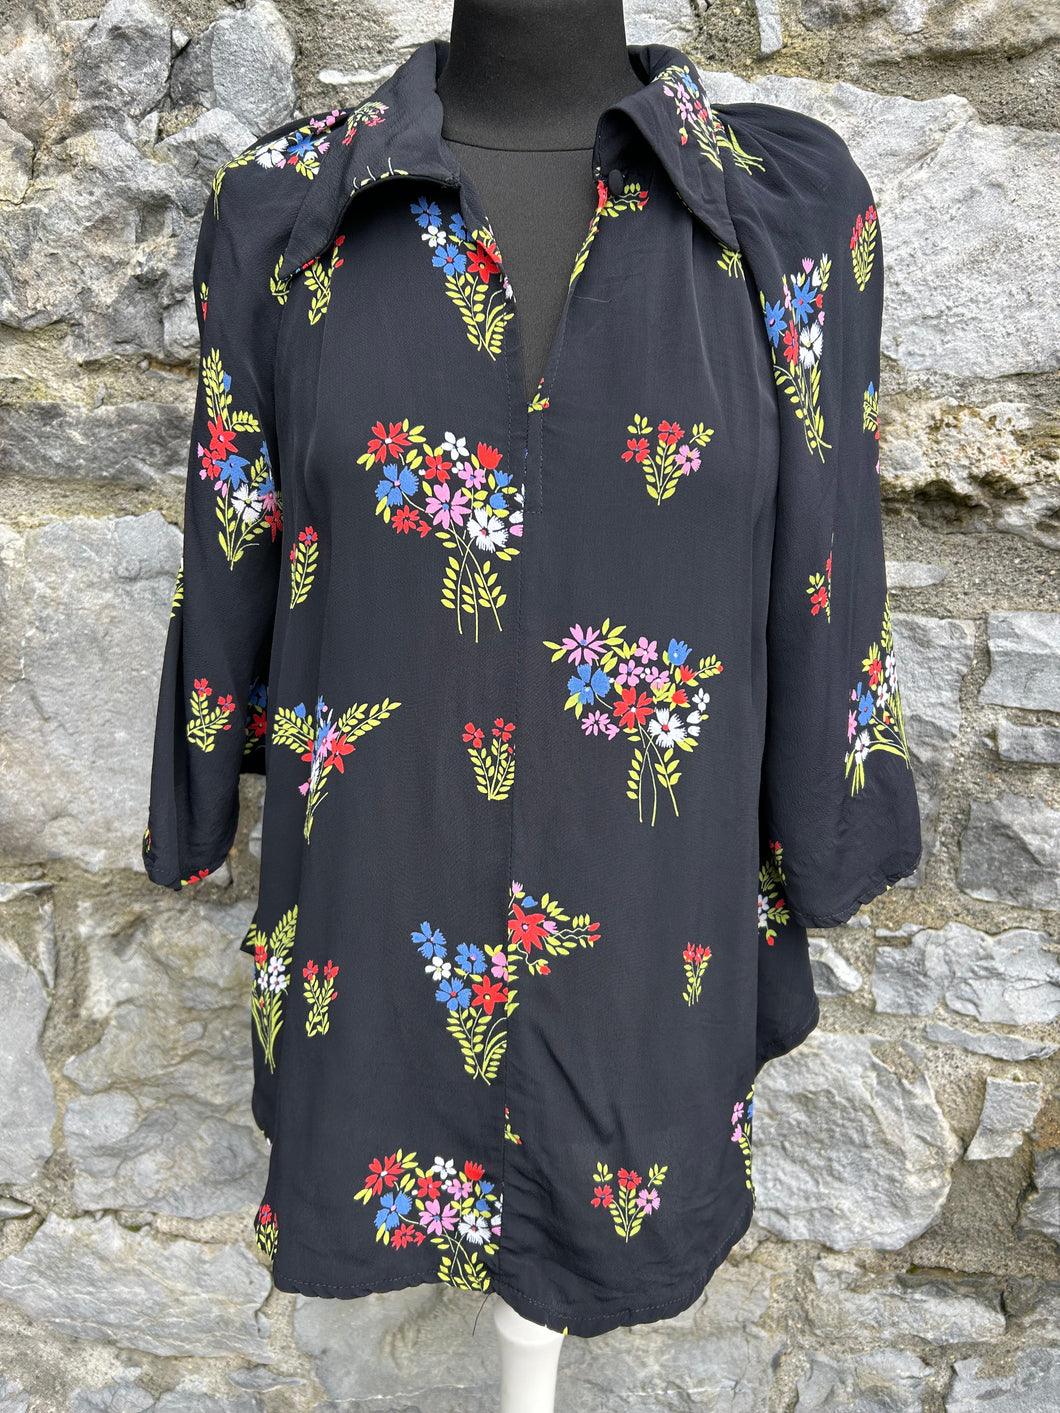 80s floral black shirt uk 8-10